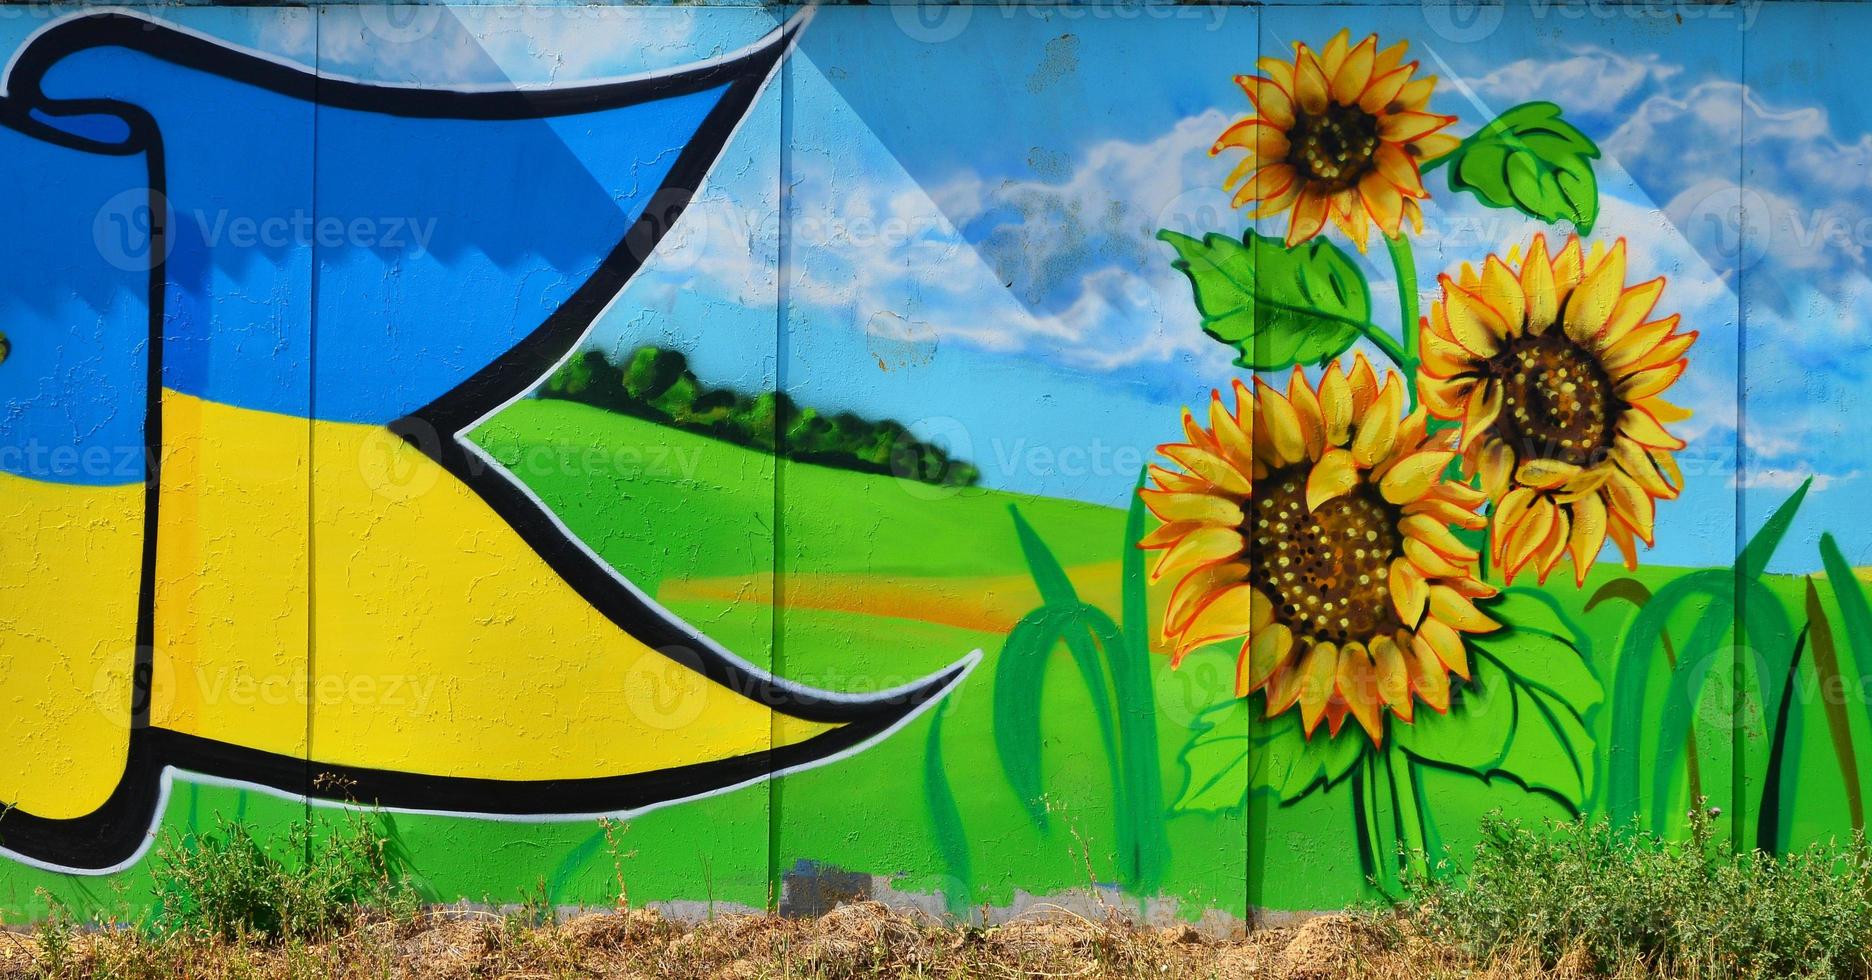 de gammal vägg, målad i Färg graffiti teckning med aerosol färger. ett bild av en traditionell ukrainska landskap med solrosor, kalina och en kvarn i en fält foto